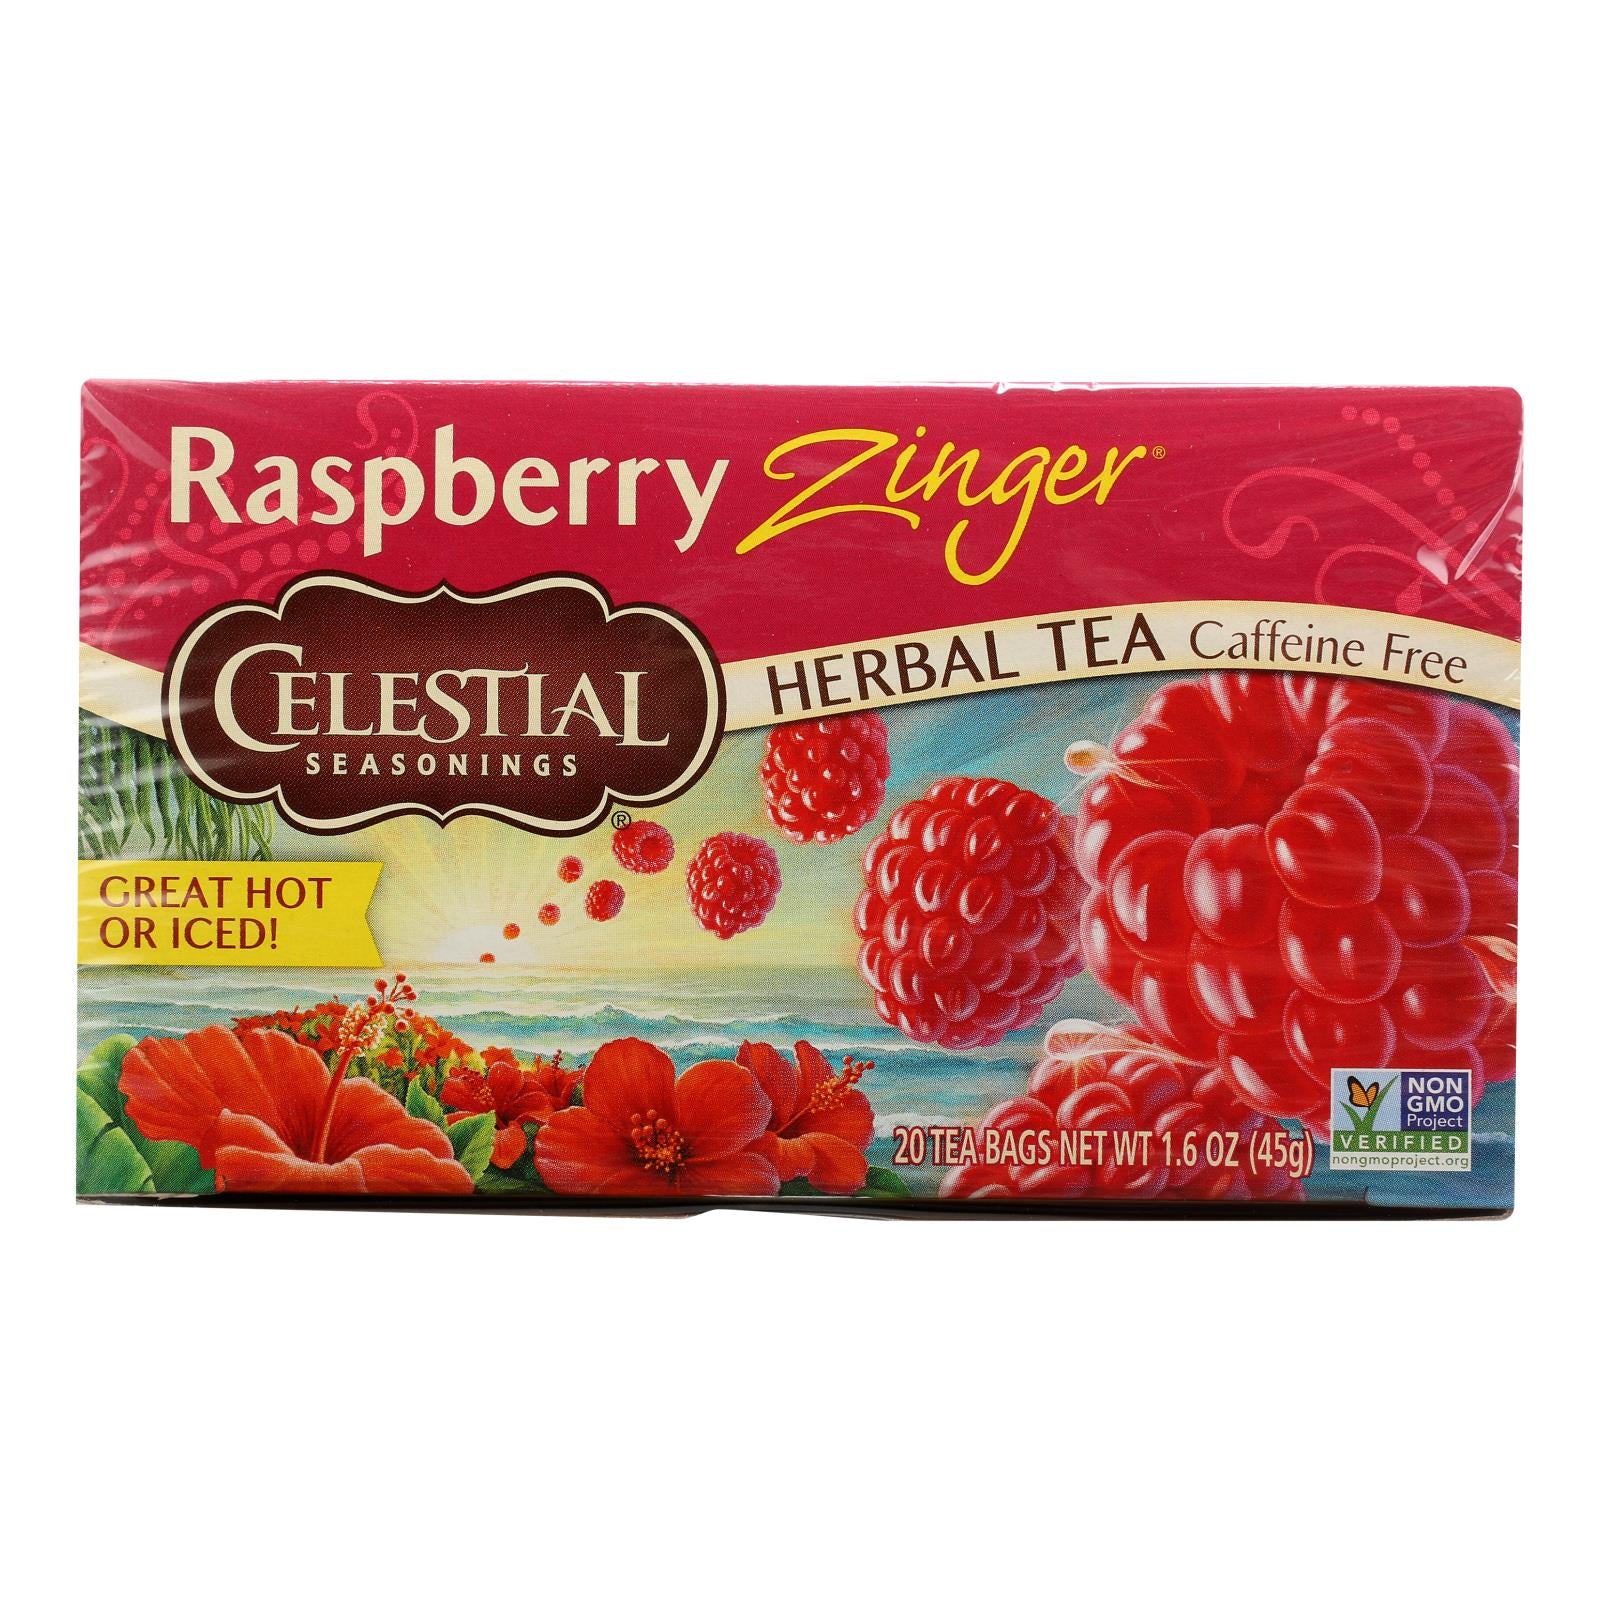 Celestial Seasonings Herbal Tea Caffeine Free Raspberry Zinger - 20 Tea Bags - Case Of 6